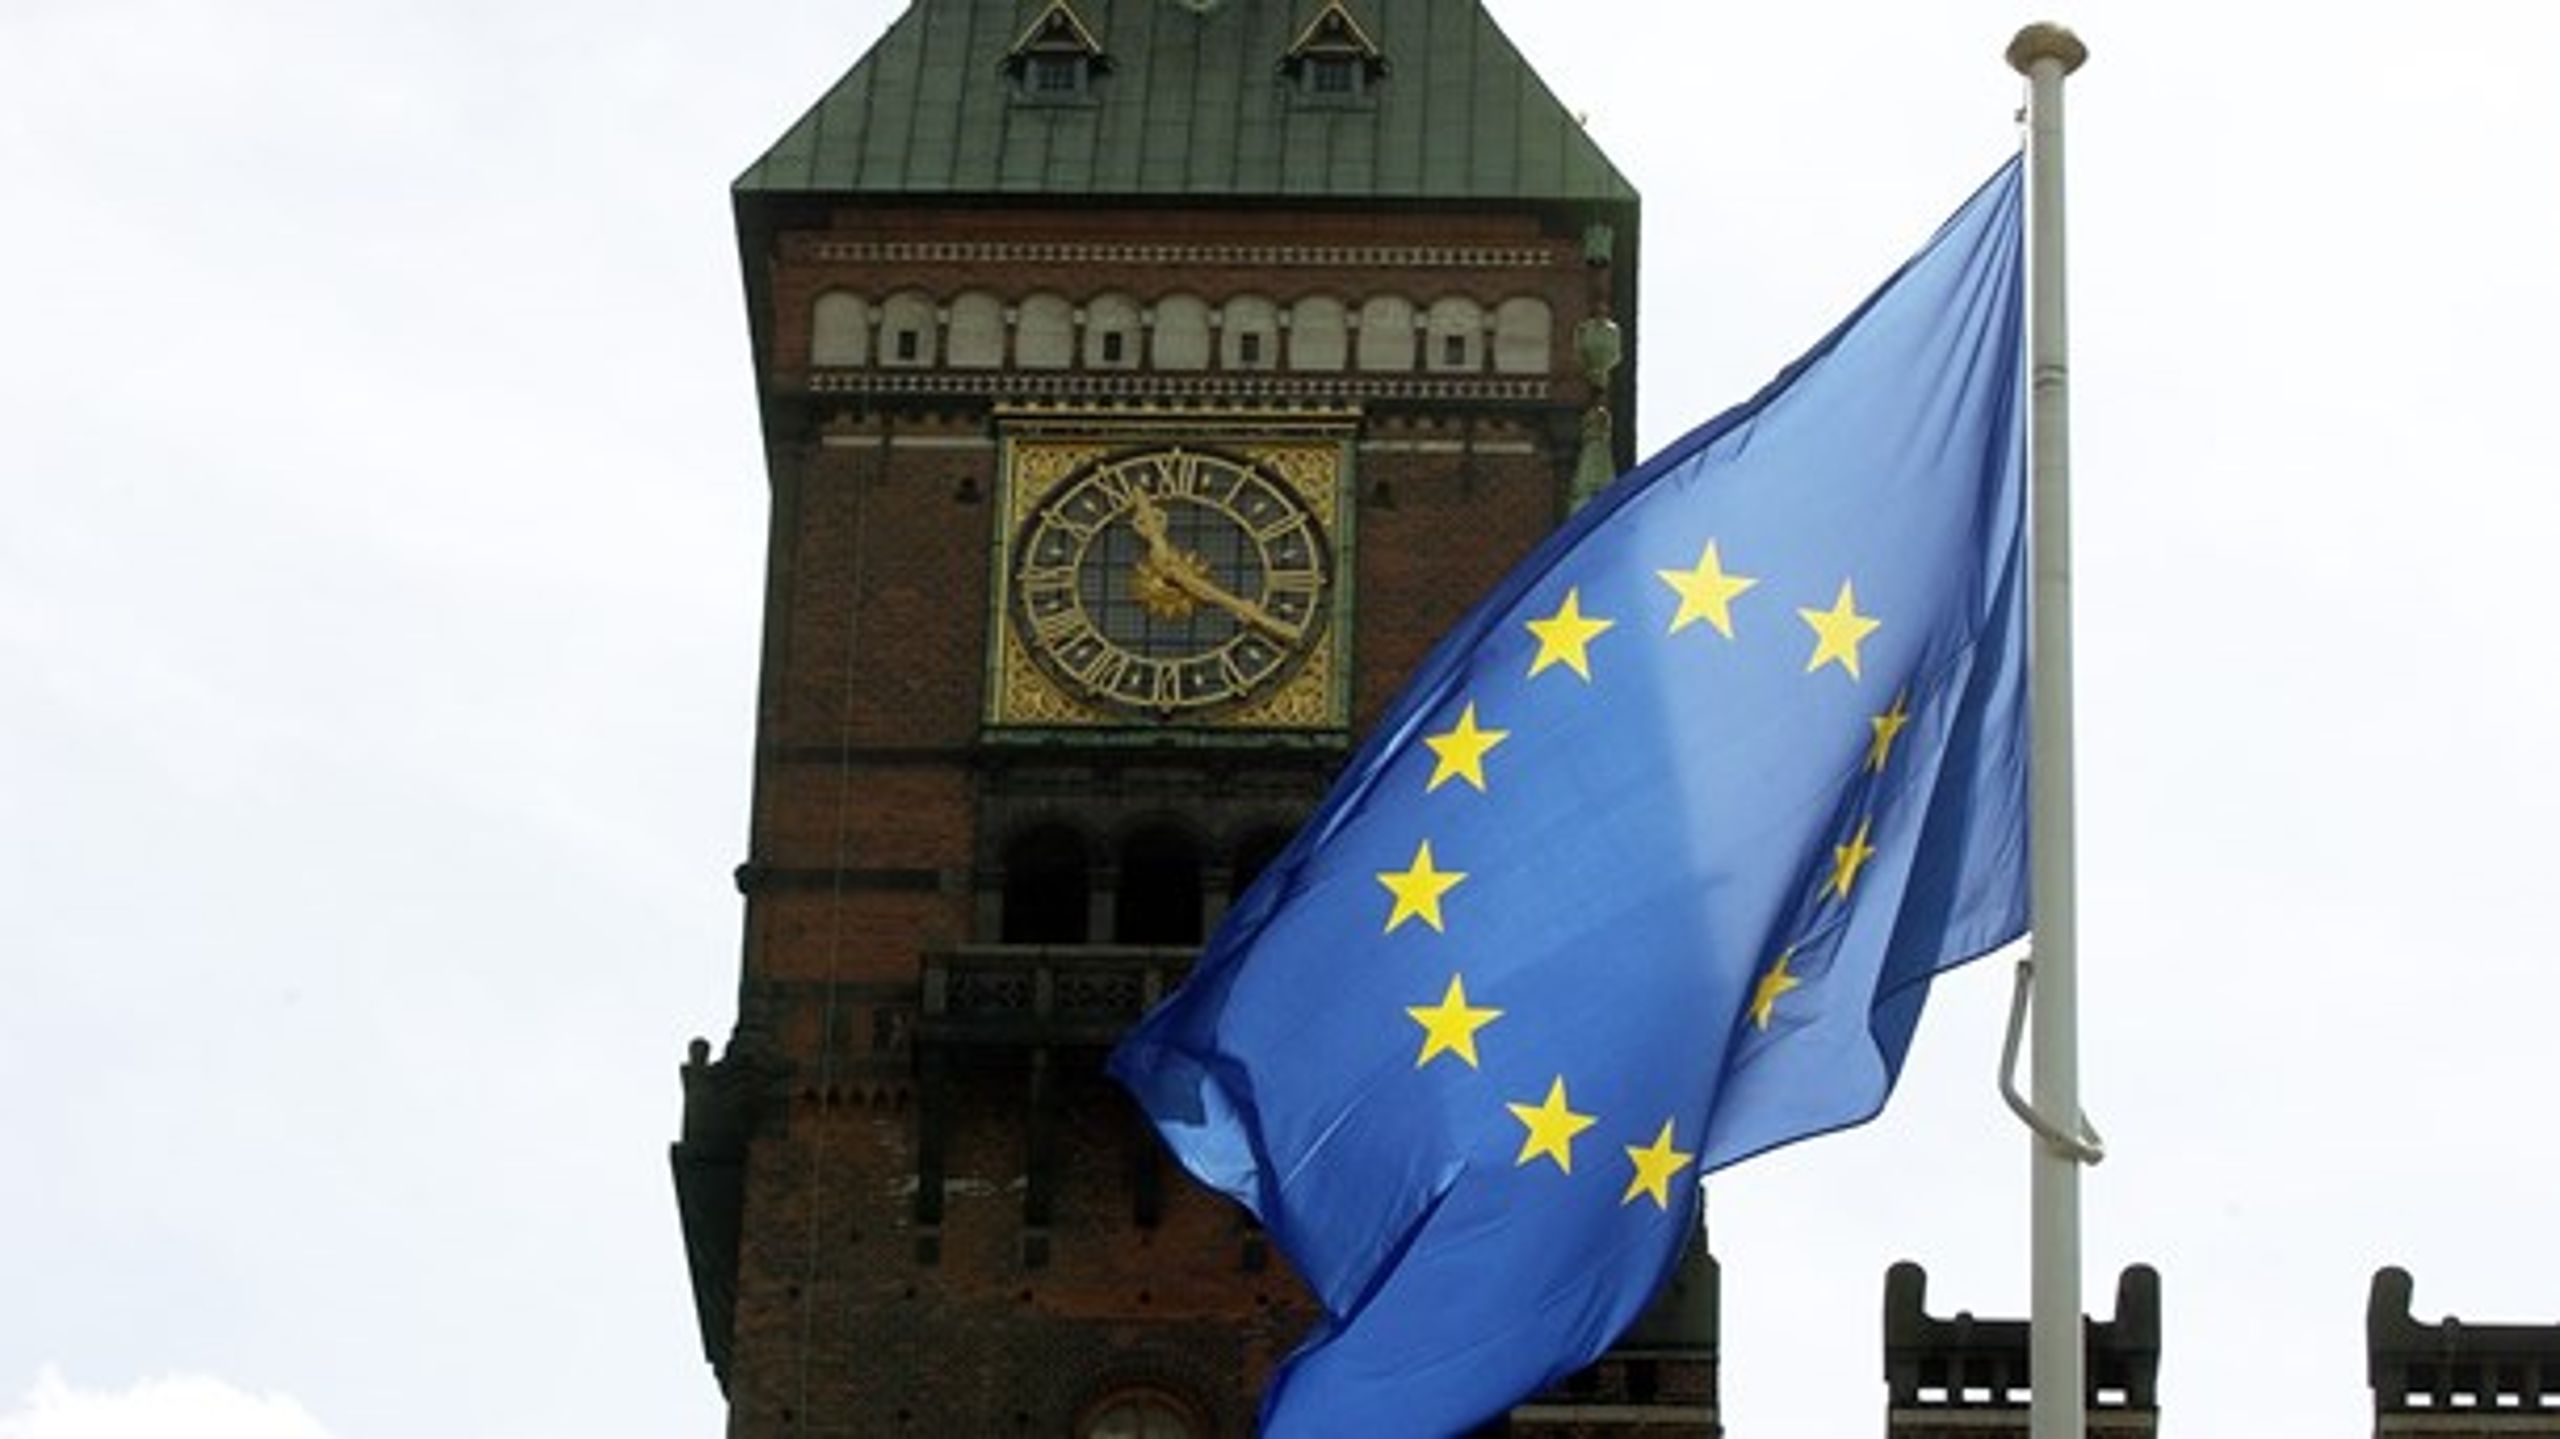 Er der langt fra rådhuset til Bruxelles? Måske ikke. 8 ud af 10 danskere føler i hvert fald, at deres stemme tæller&nbsp;i EU, ifølge en ny Eurobarometer-undersøgelse.&nbsp;